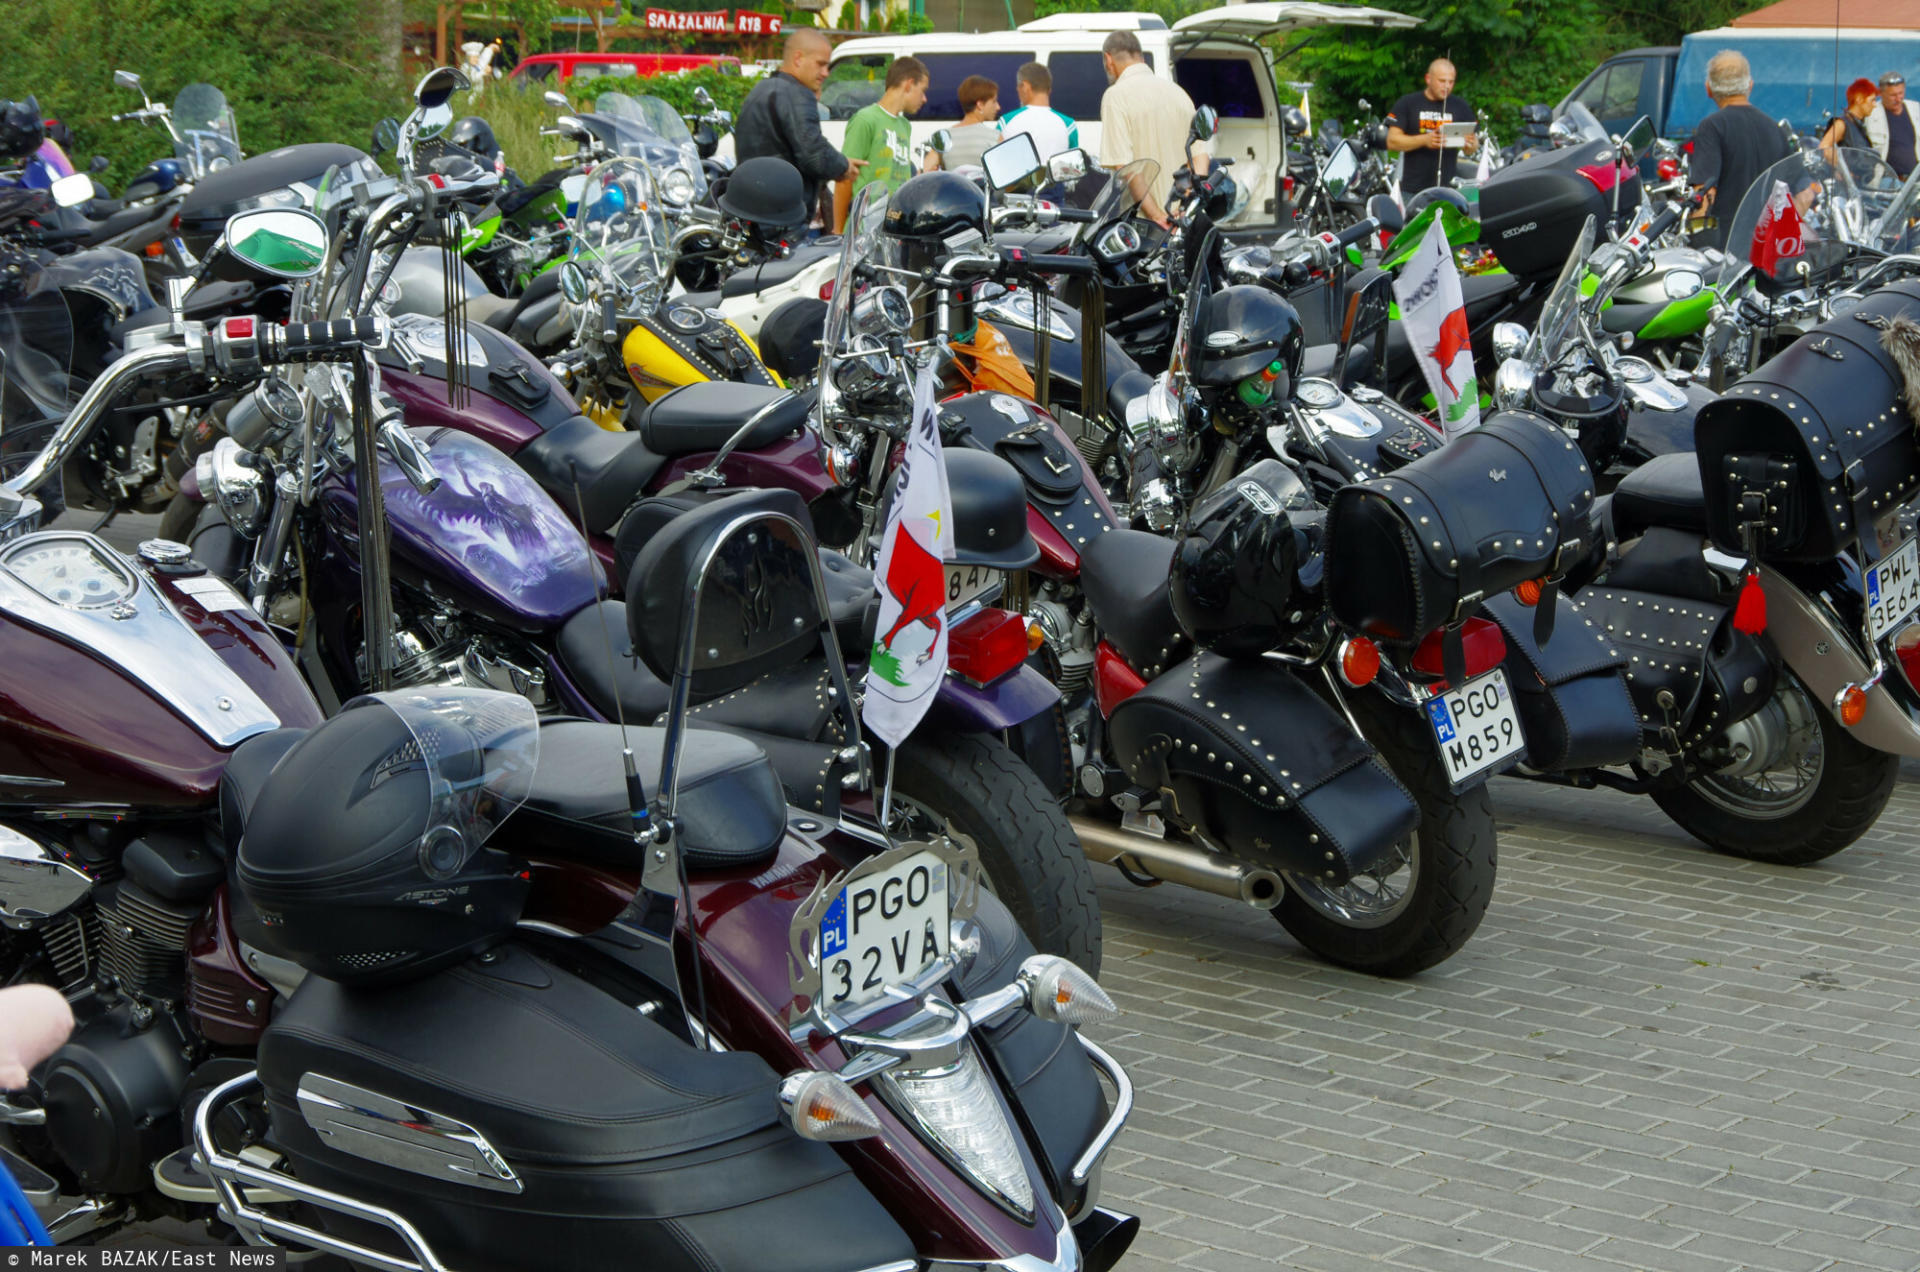 Zlot motocyklistów na Jasnej Górze. Prokuratura i Sanepid zbadają czy doszło do przestępstwa